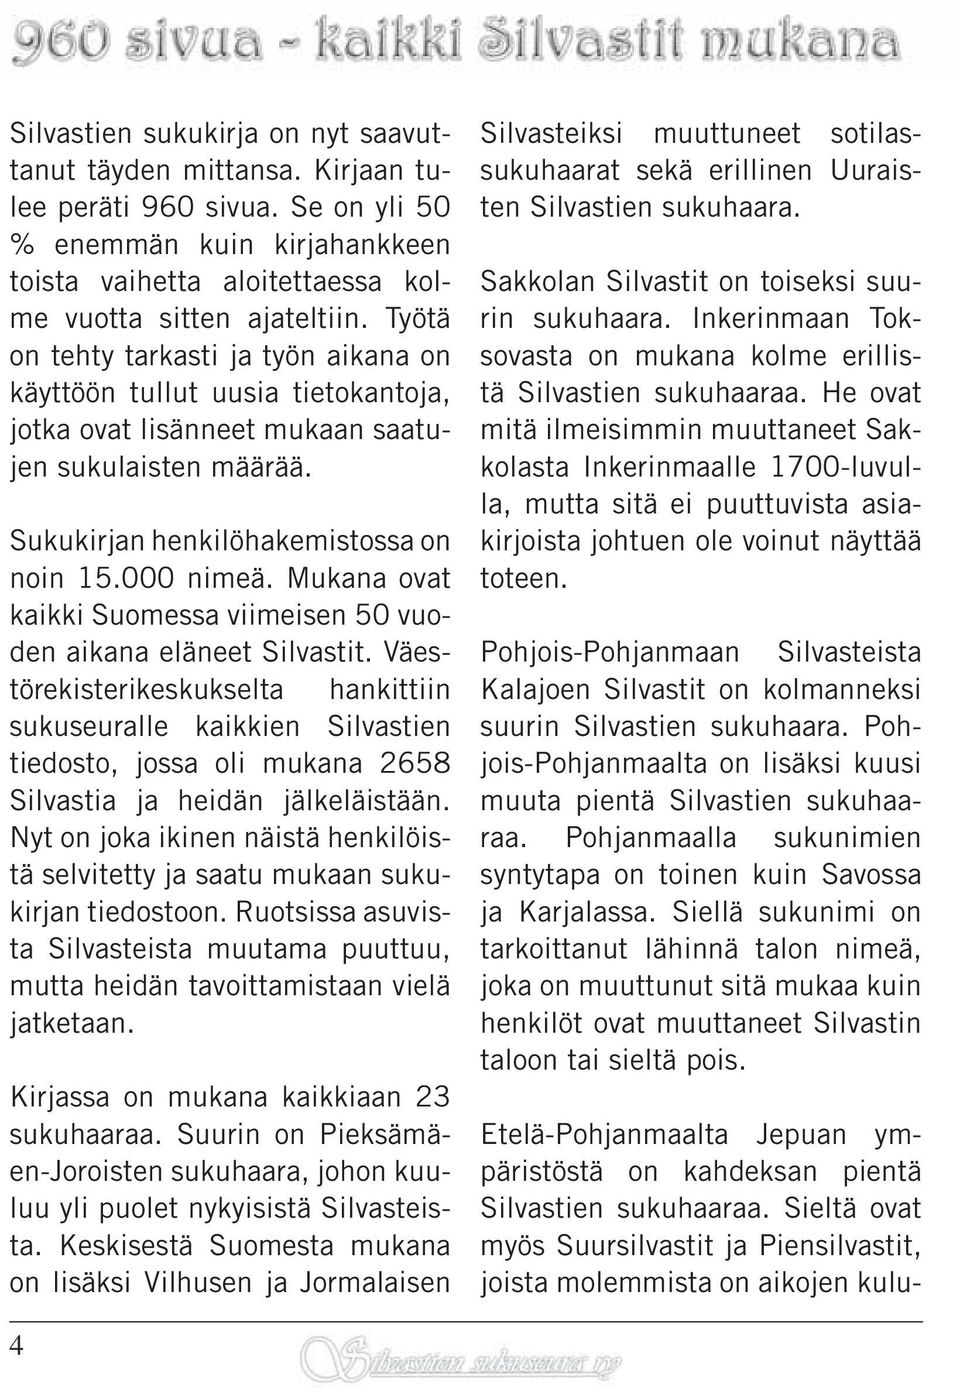 Mukana ovat kaikki Suomessa viimeisen 50 vuoden aikana eläneet Silvastit.